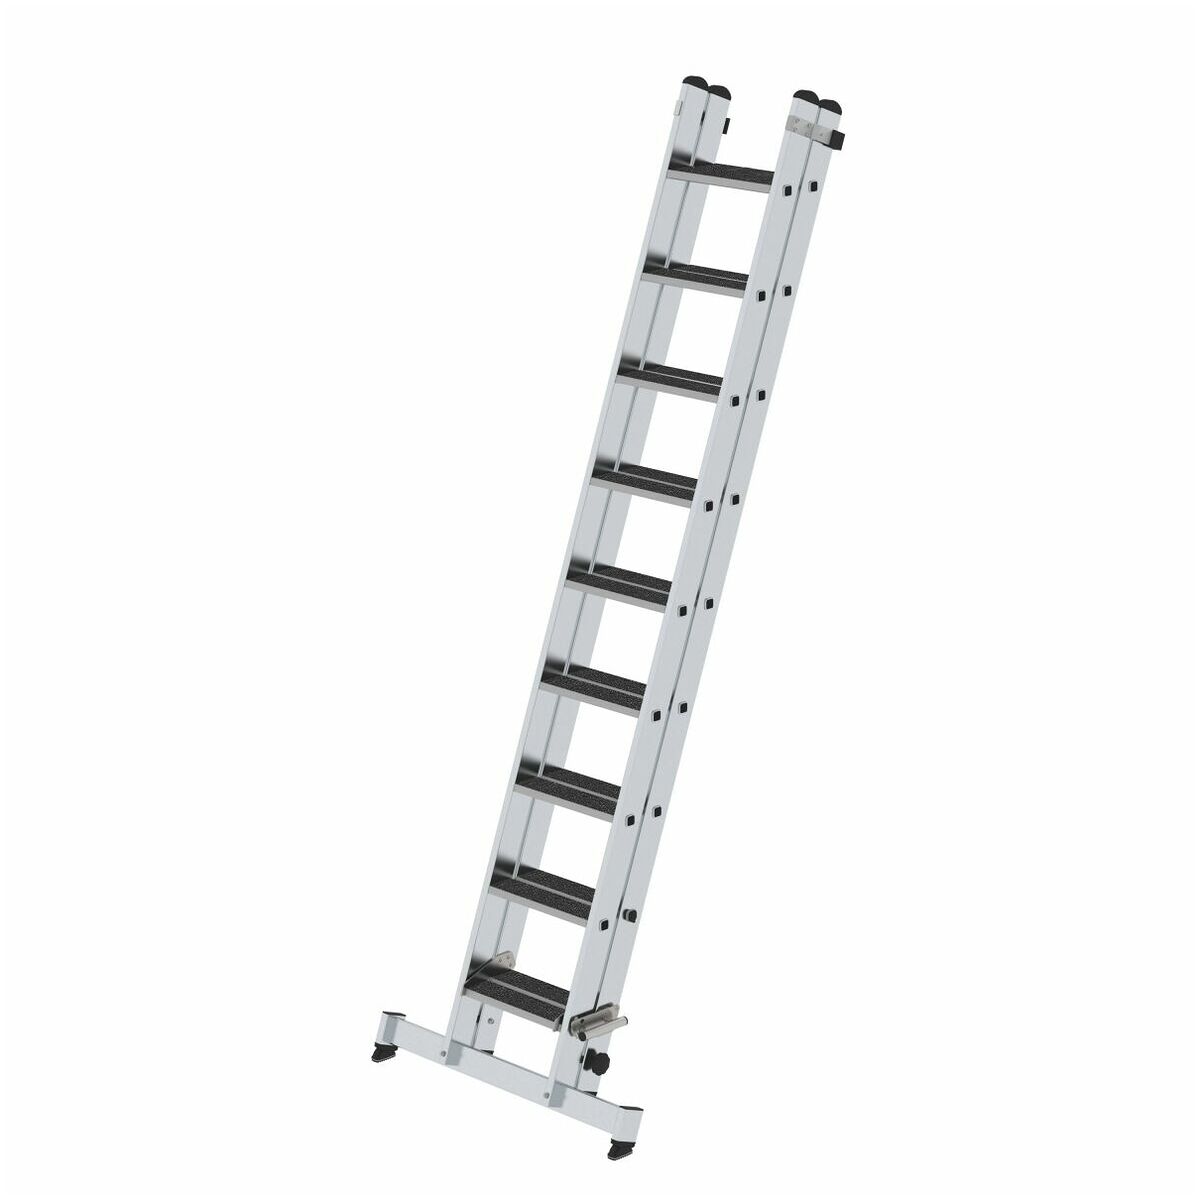 Stufen-Schiebeleiter 2-teilig mit nivello-Traverse mit clip-step R13, 2 x 9 Stufen